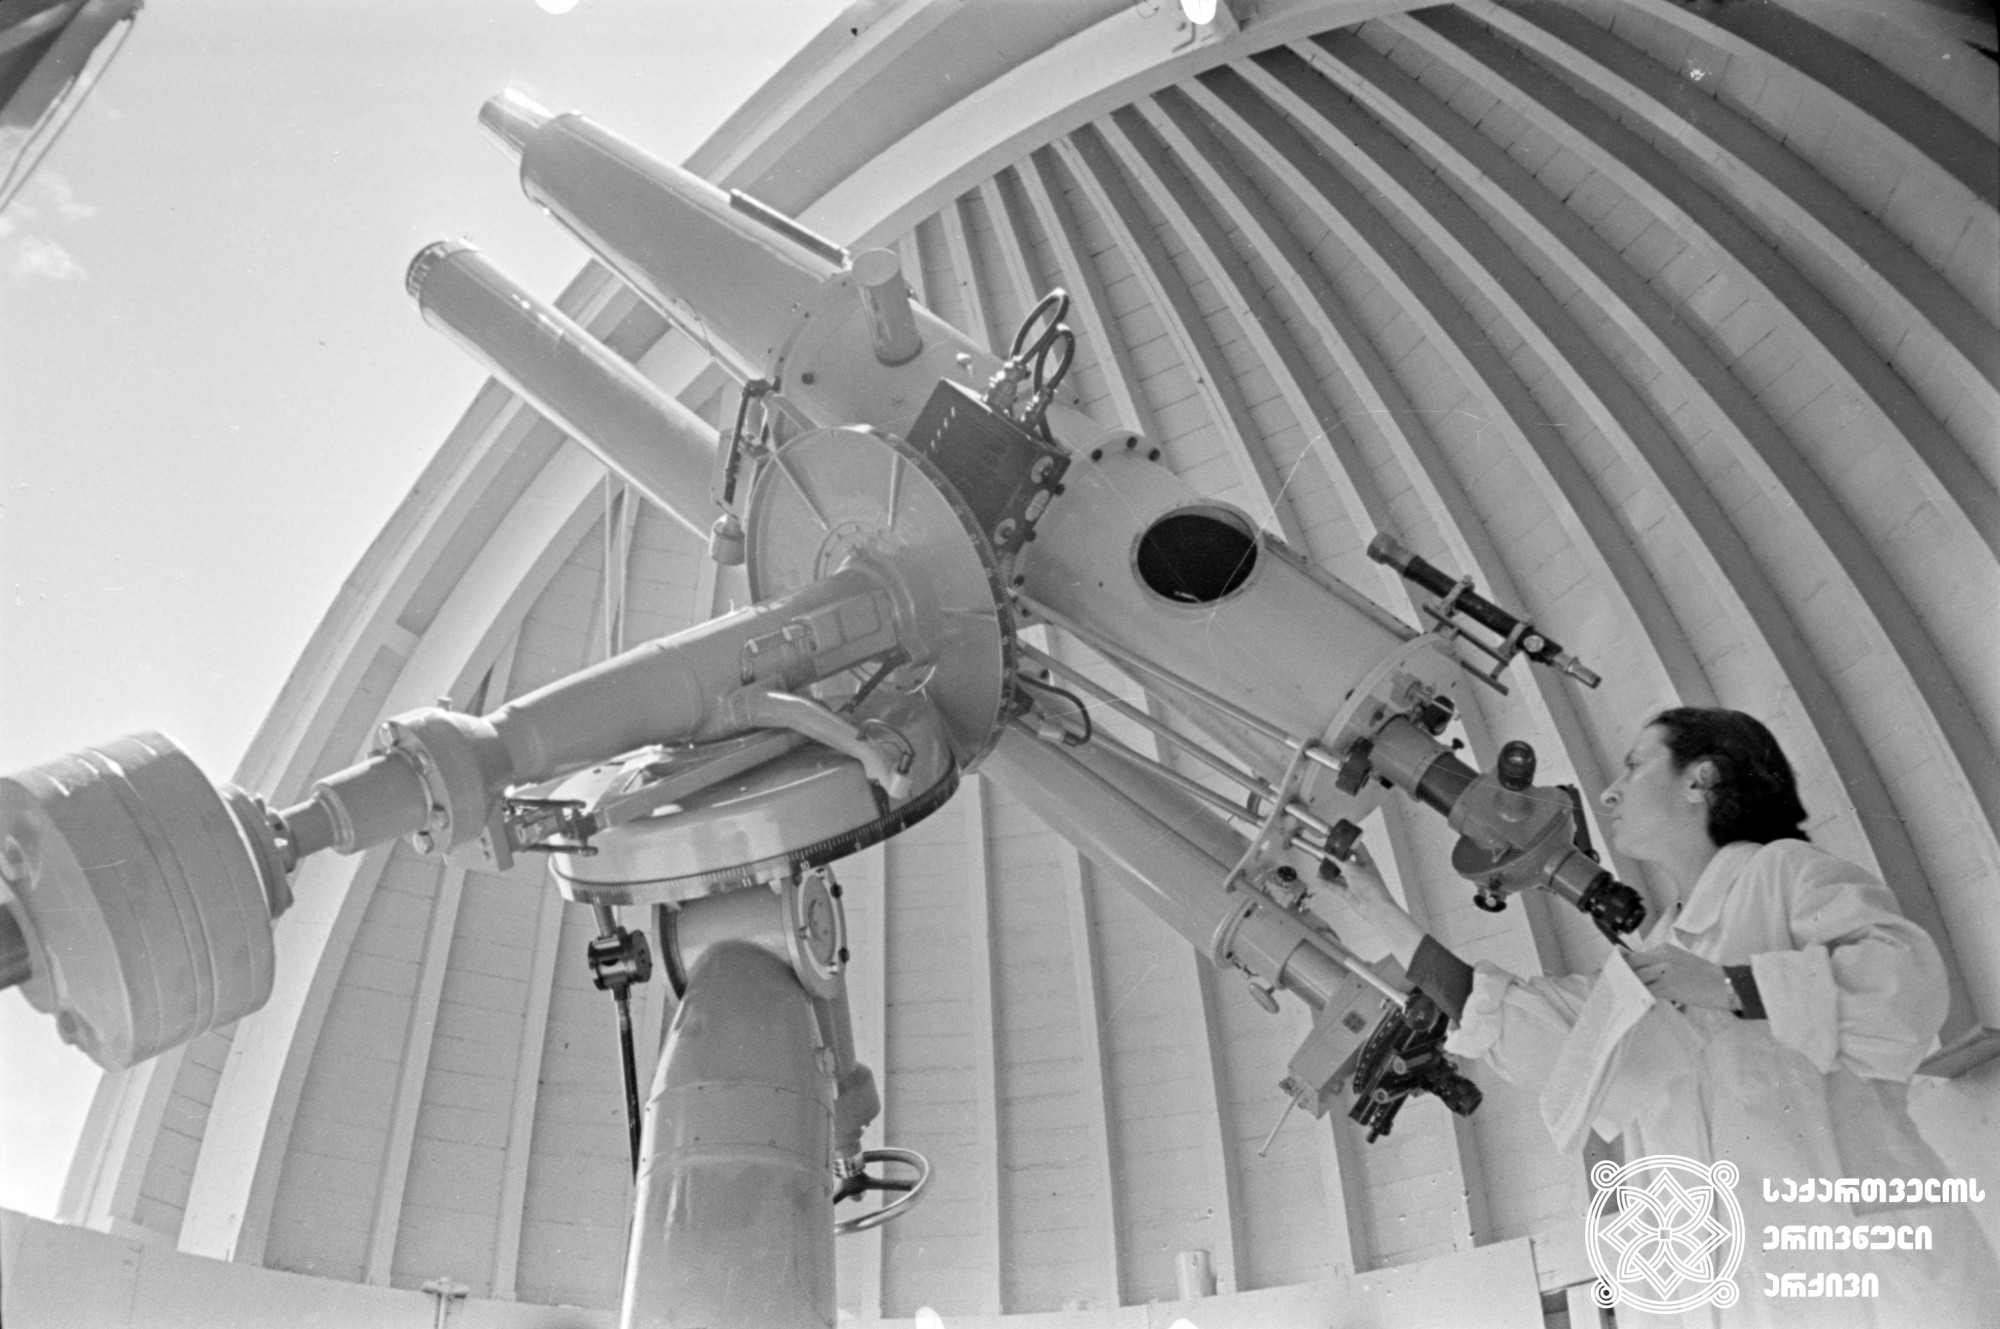 აბასთუმნის ასტროფიზიკური ობსერვატორია. ფიზიკა-მათემატიკურ მეცნიერაბათა კანდიდატი ტ. რაზმაძე ტელესკოპთან, <br> 
1957 წელი. <br>